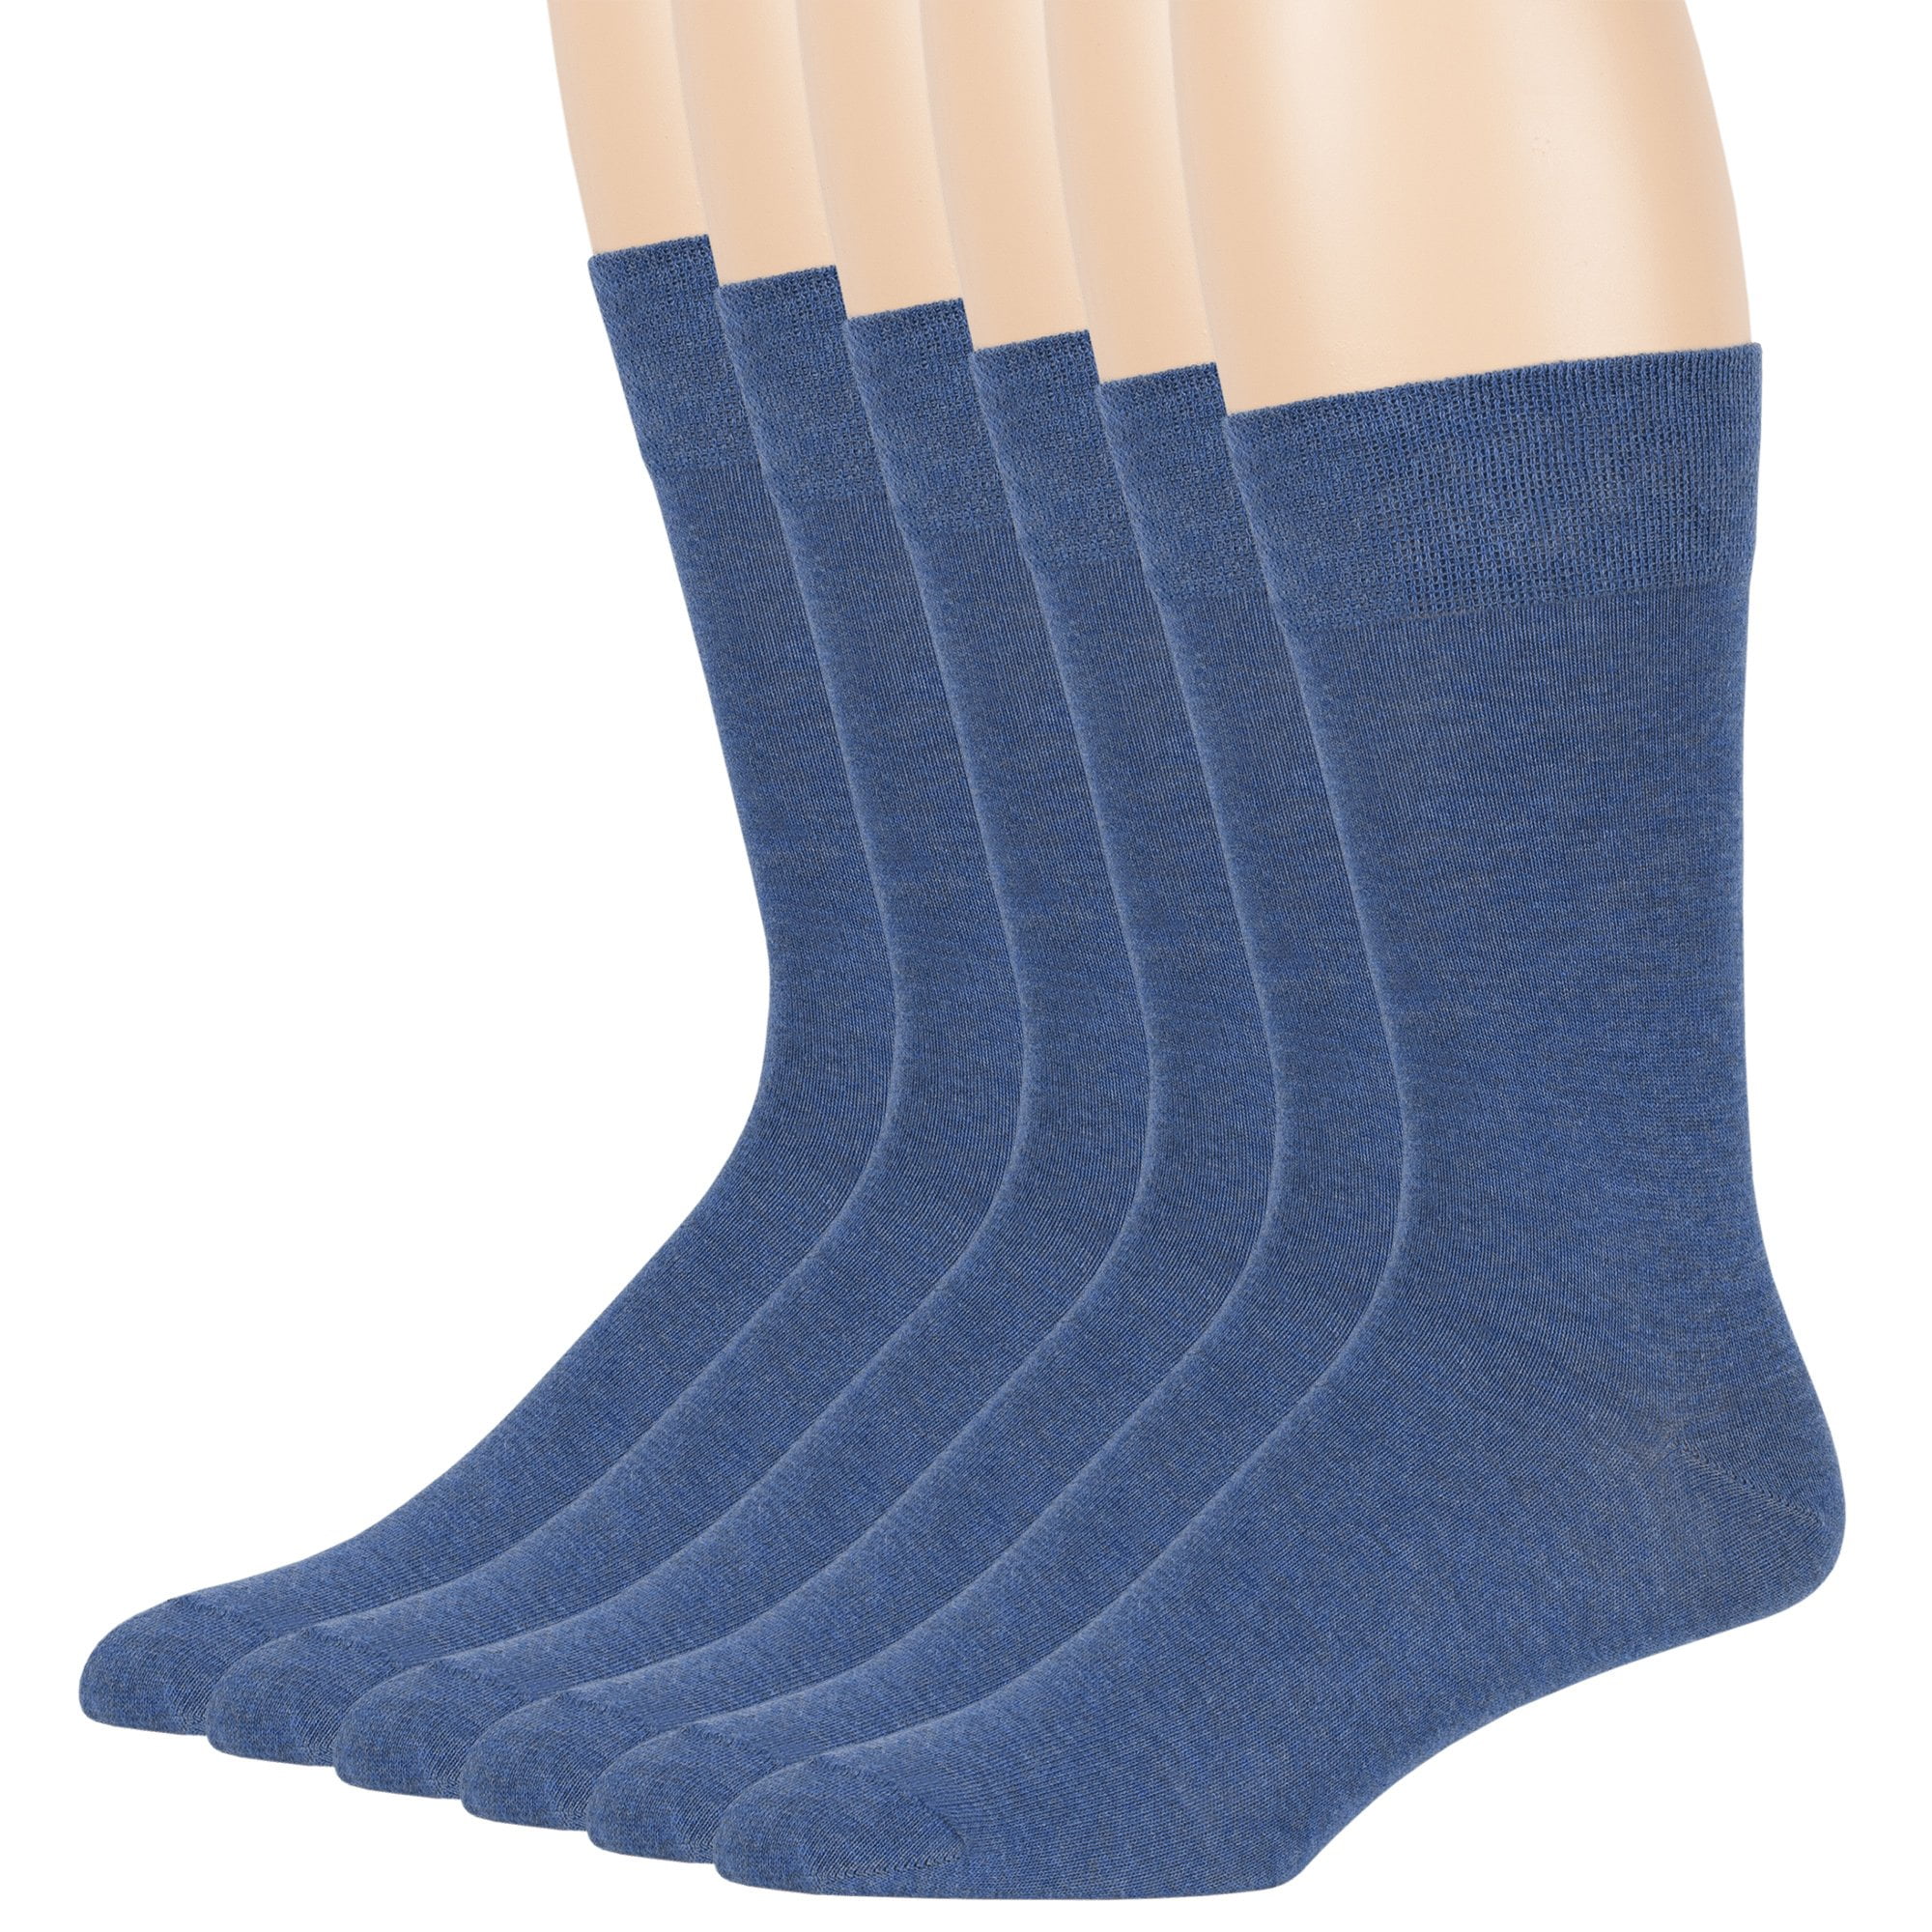 7BIGSTARS KINGDOM - Mens Cotton Comfort Big and Tall Socks, Denim Blue ...